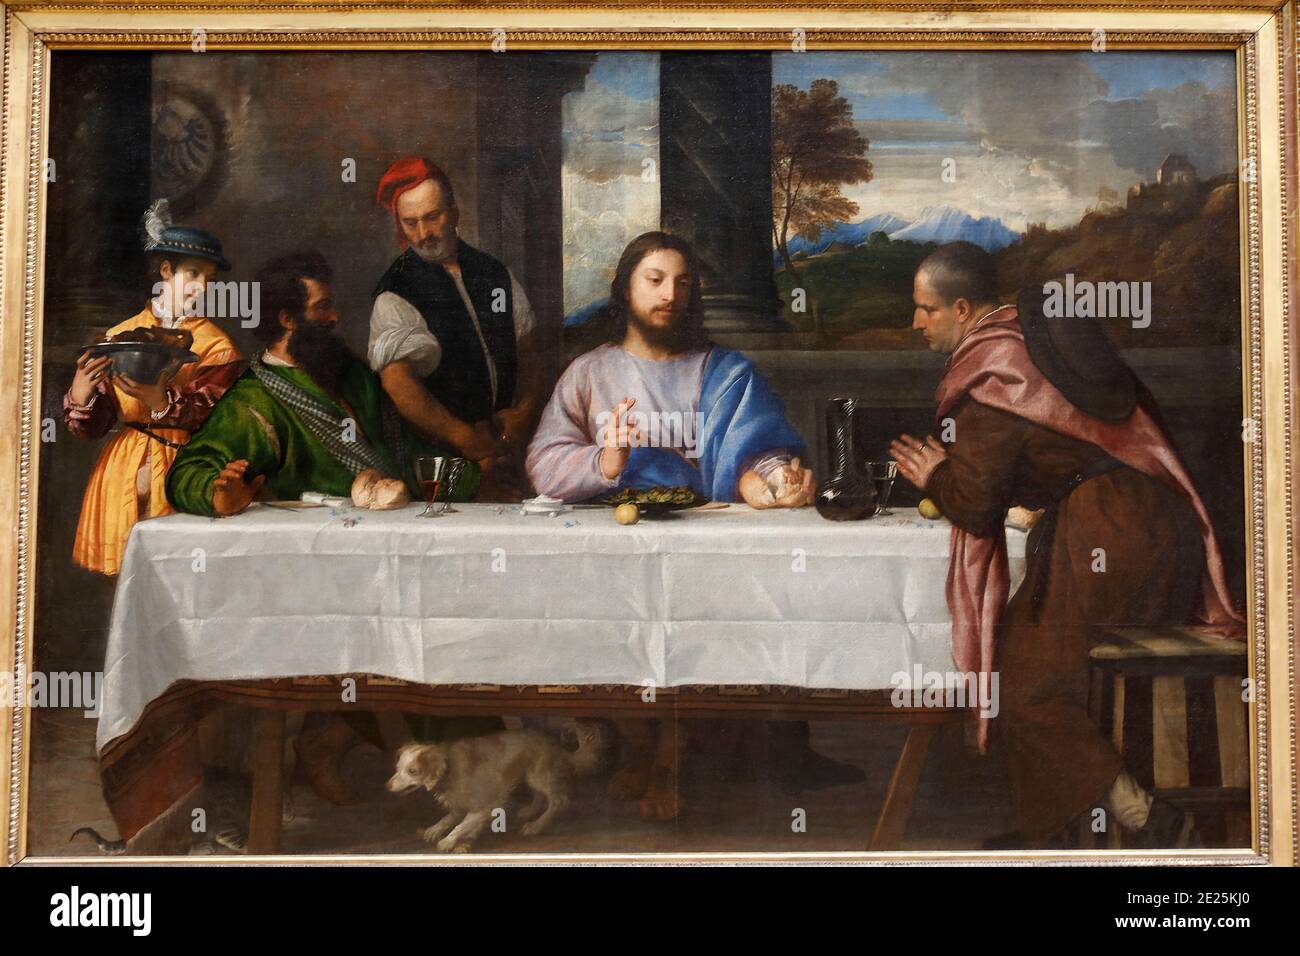 Museo del Louvre, Parigi, Francia. Tiziano Vecellio, noto come Tiziano, i pellegrini a Emmaüs, olio su tela, c.1534. Foto Stock